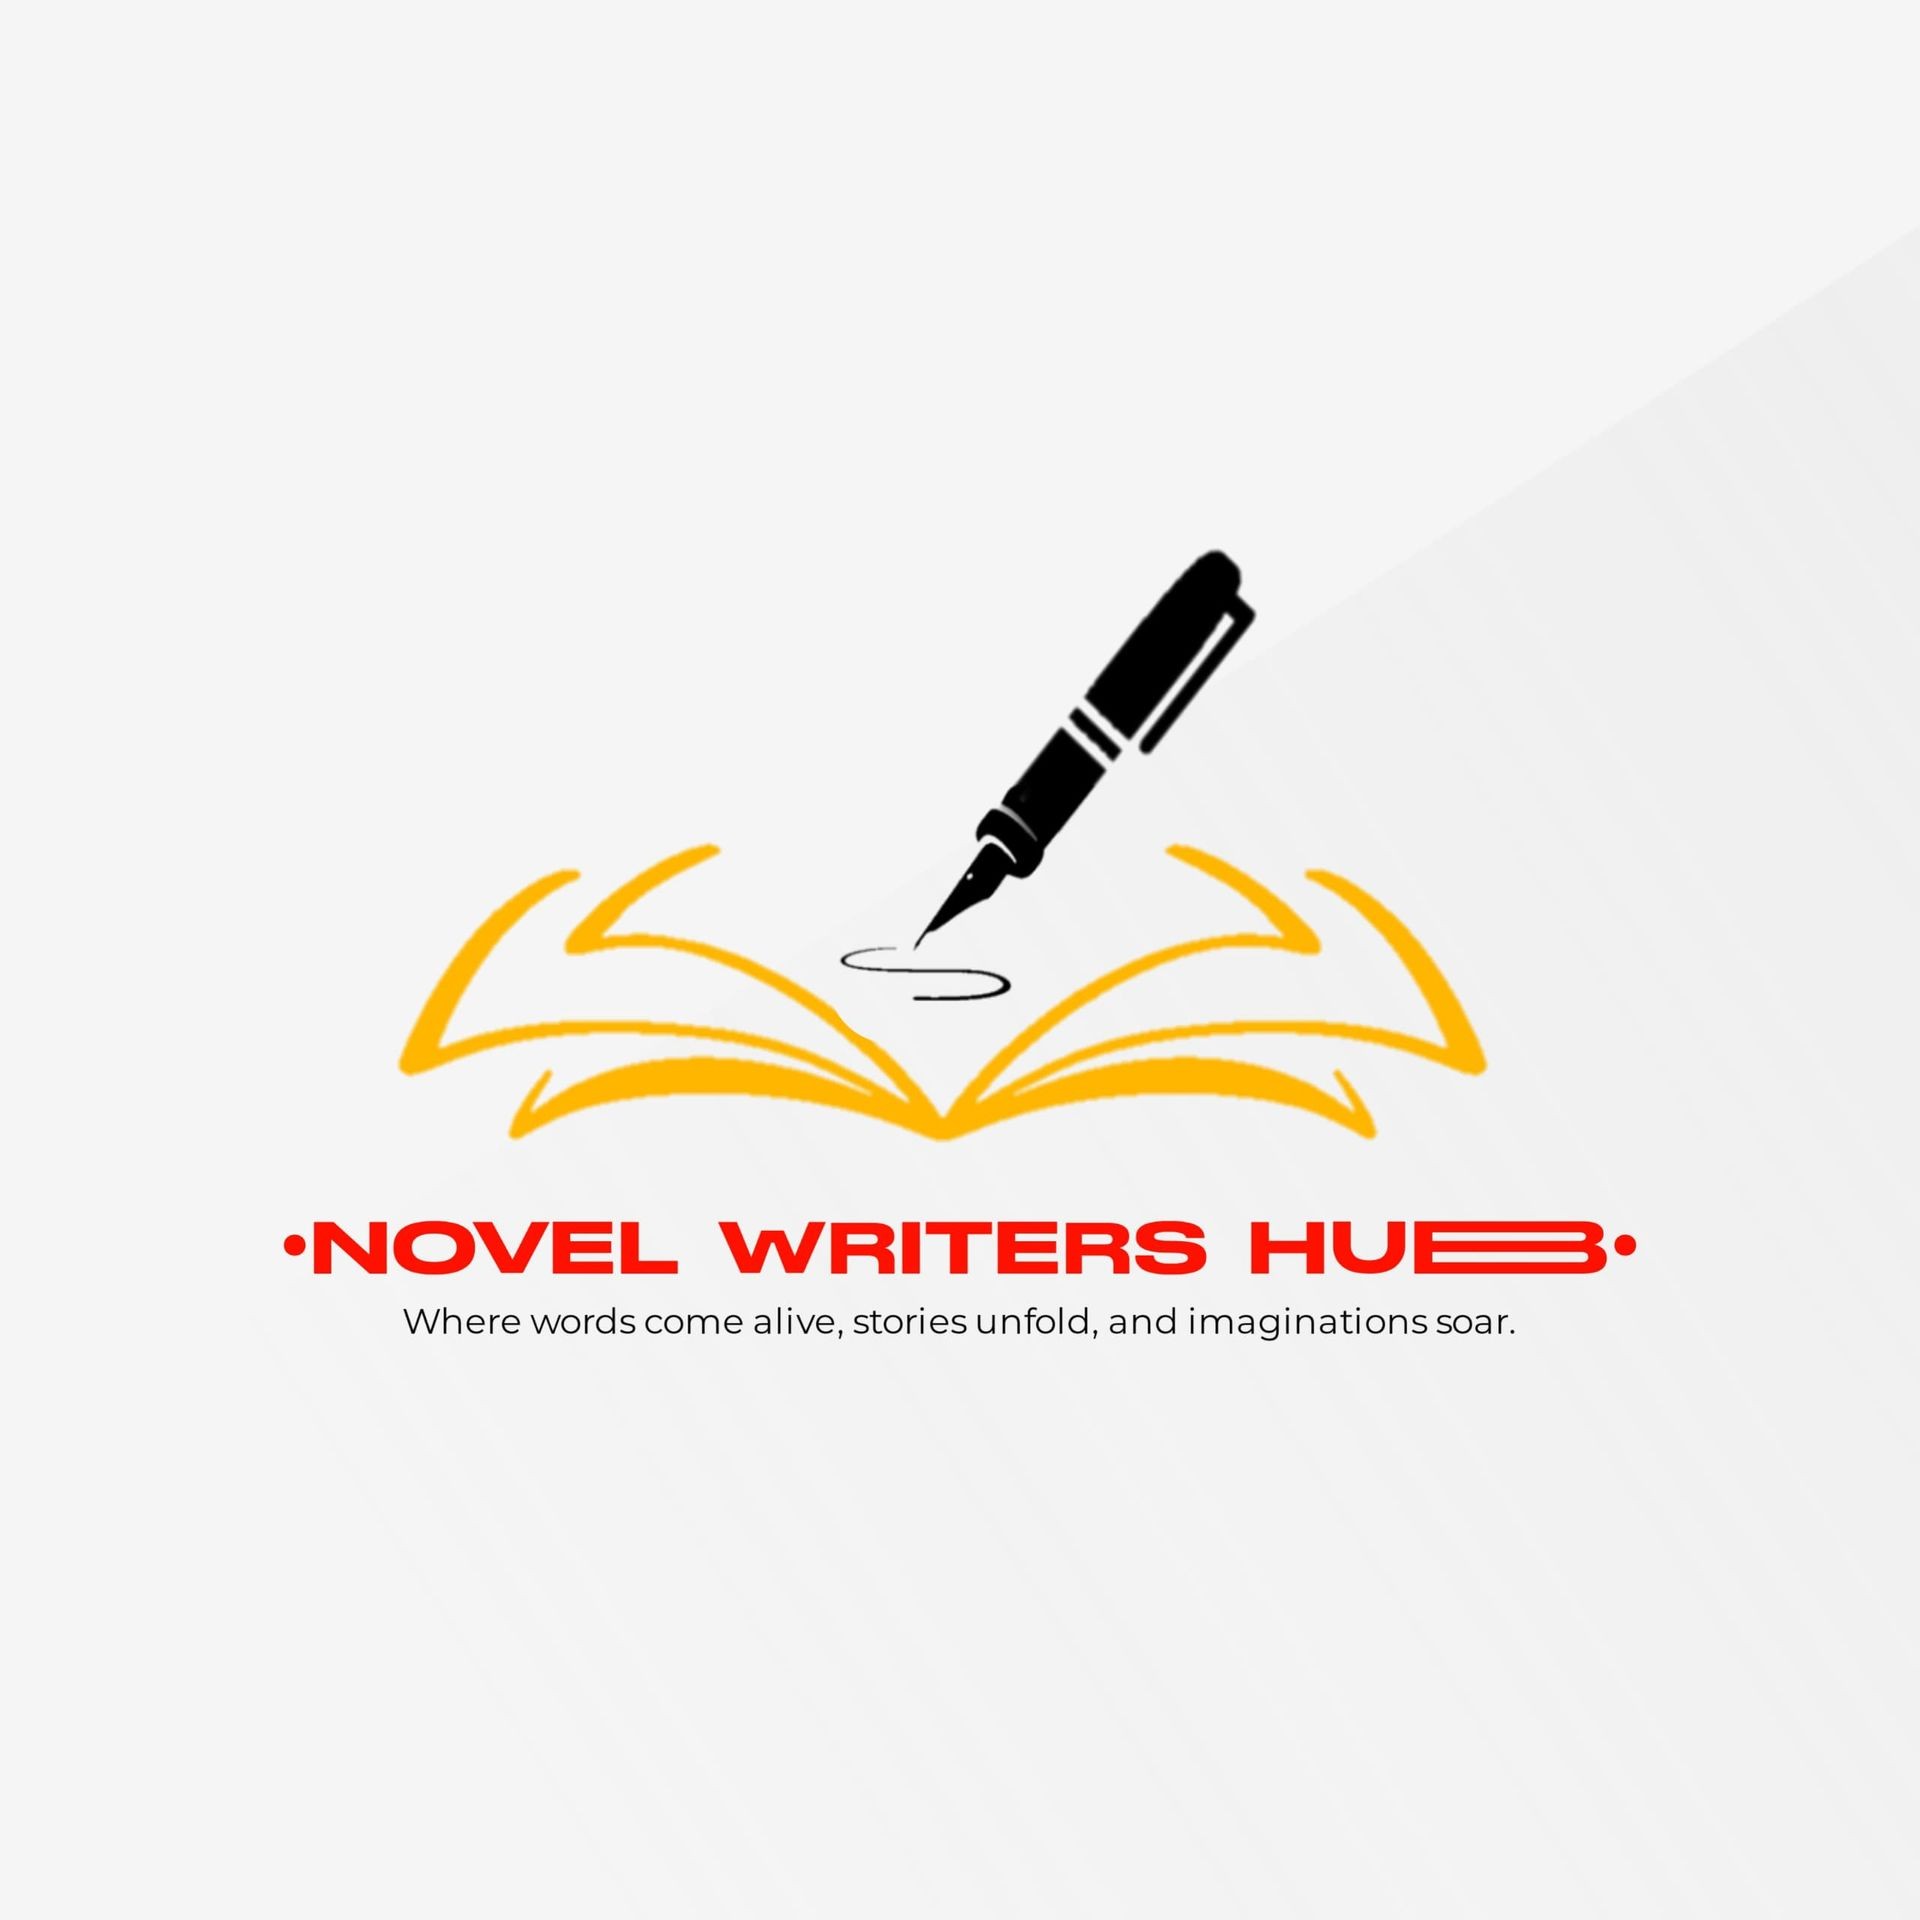 Novel writers hub 